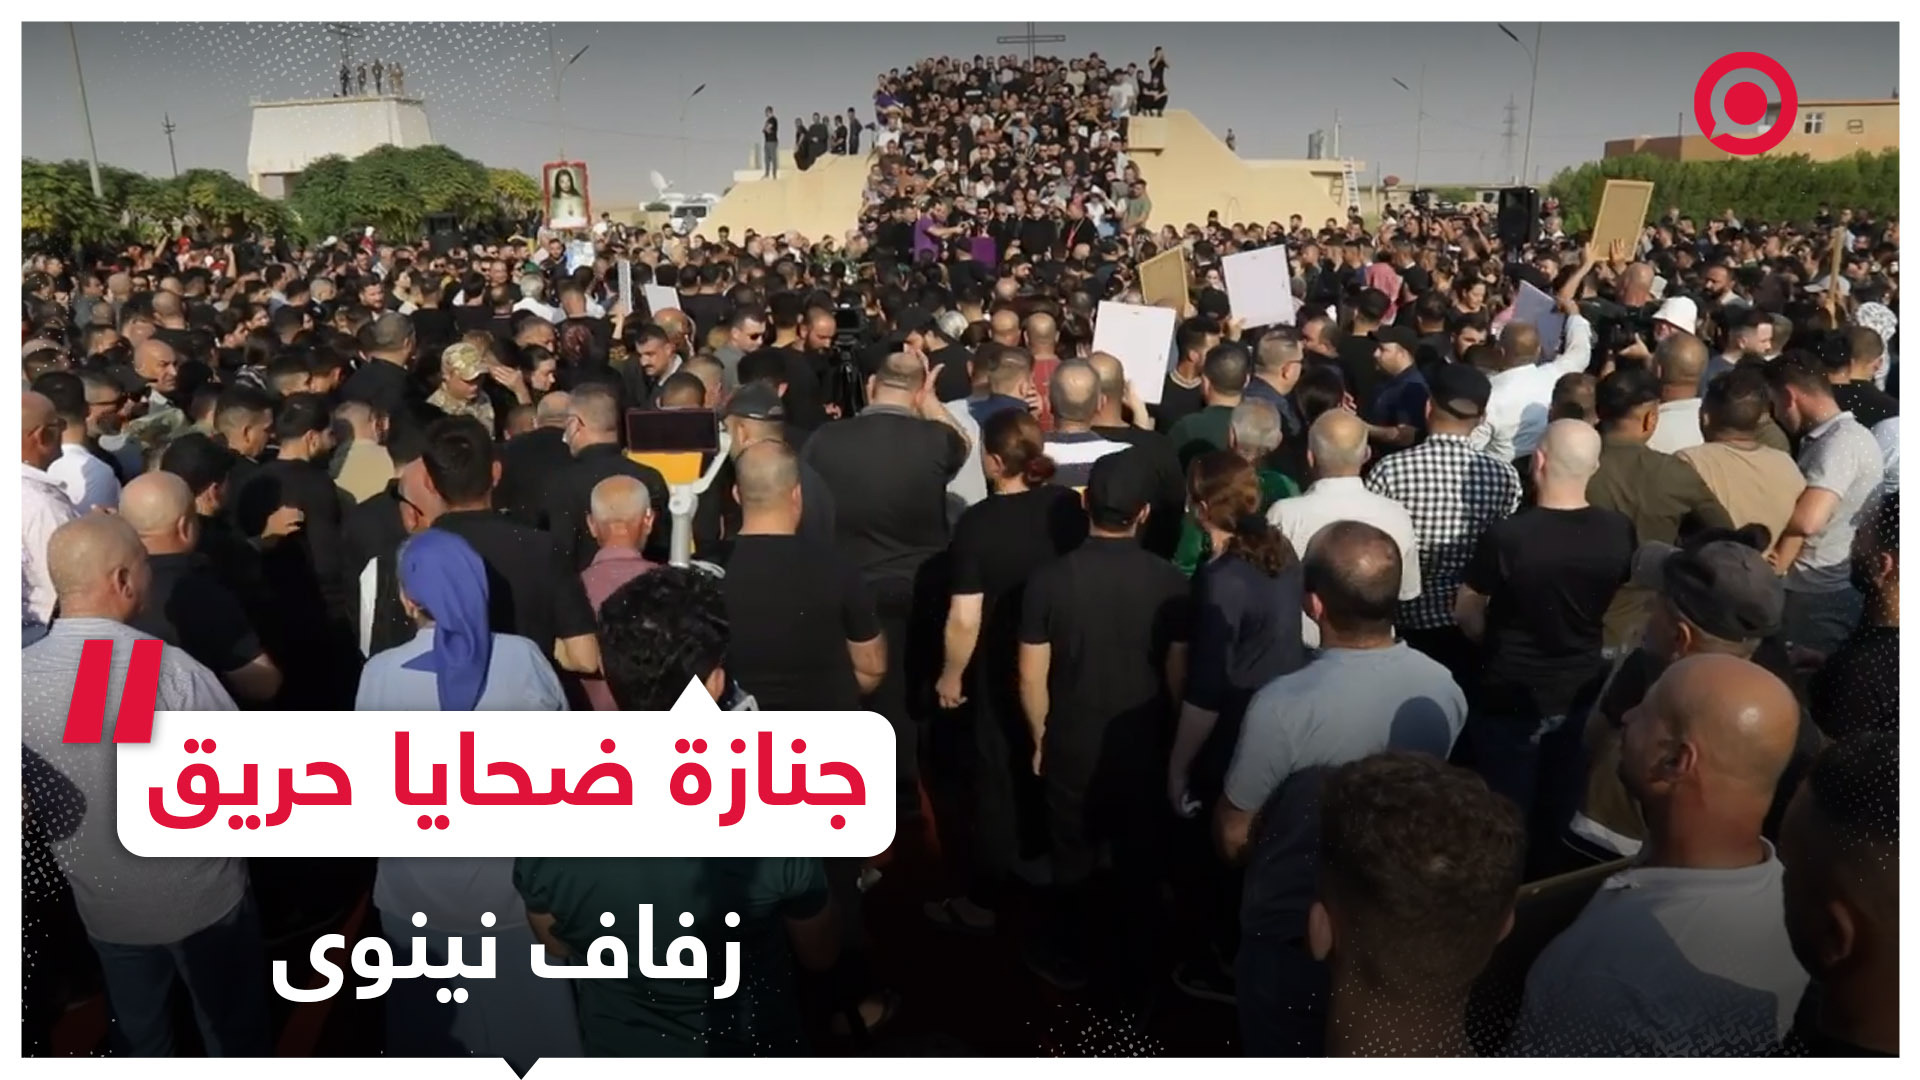 آلاف العراقيين يحضرون لتشييع جنازة جماعية لضحايا حريق زفاف نينوى